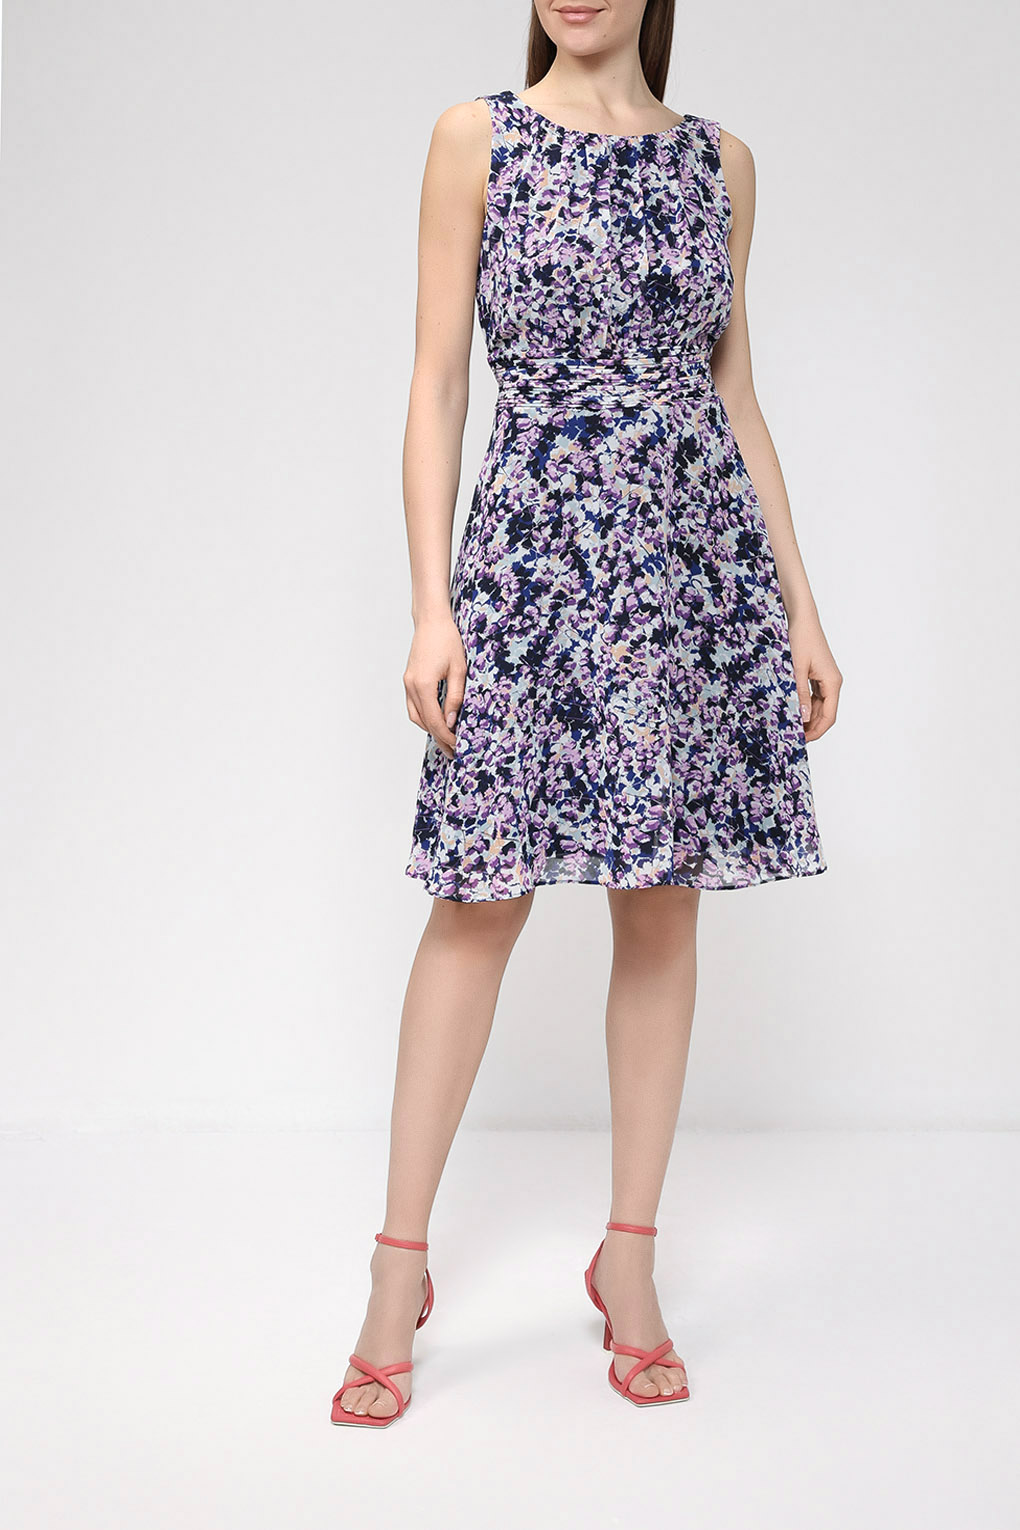 Платье женское Esprit Collection 991EO1E304 синее 32